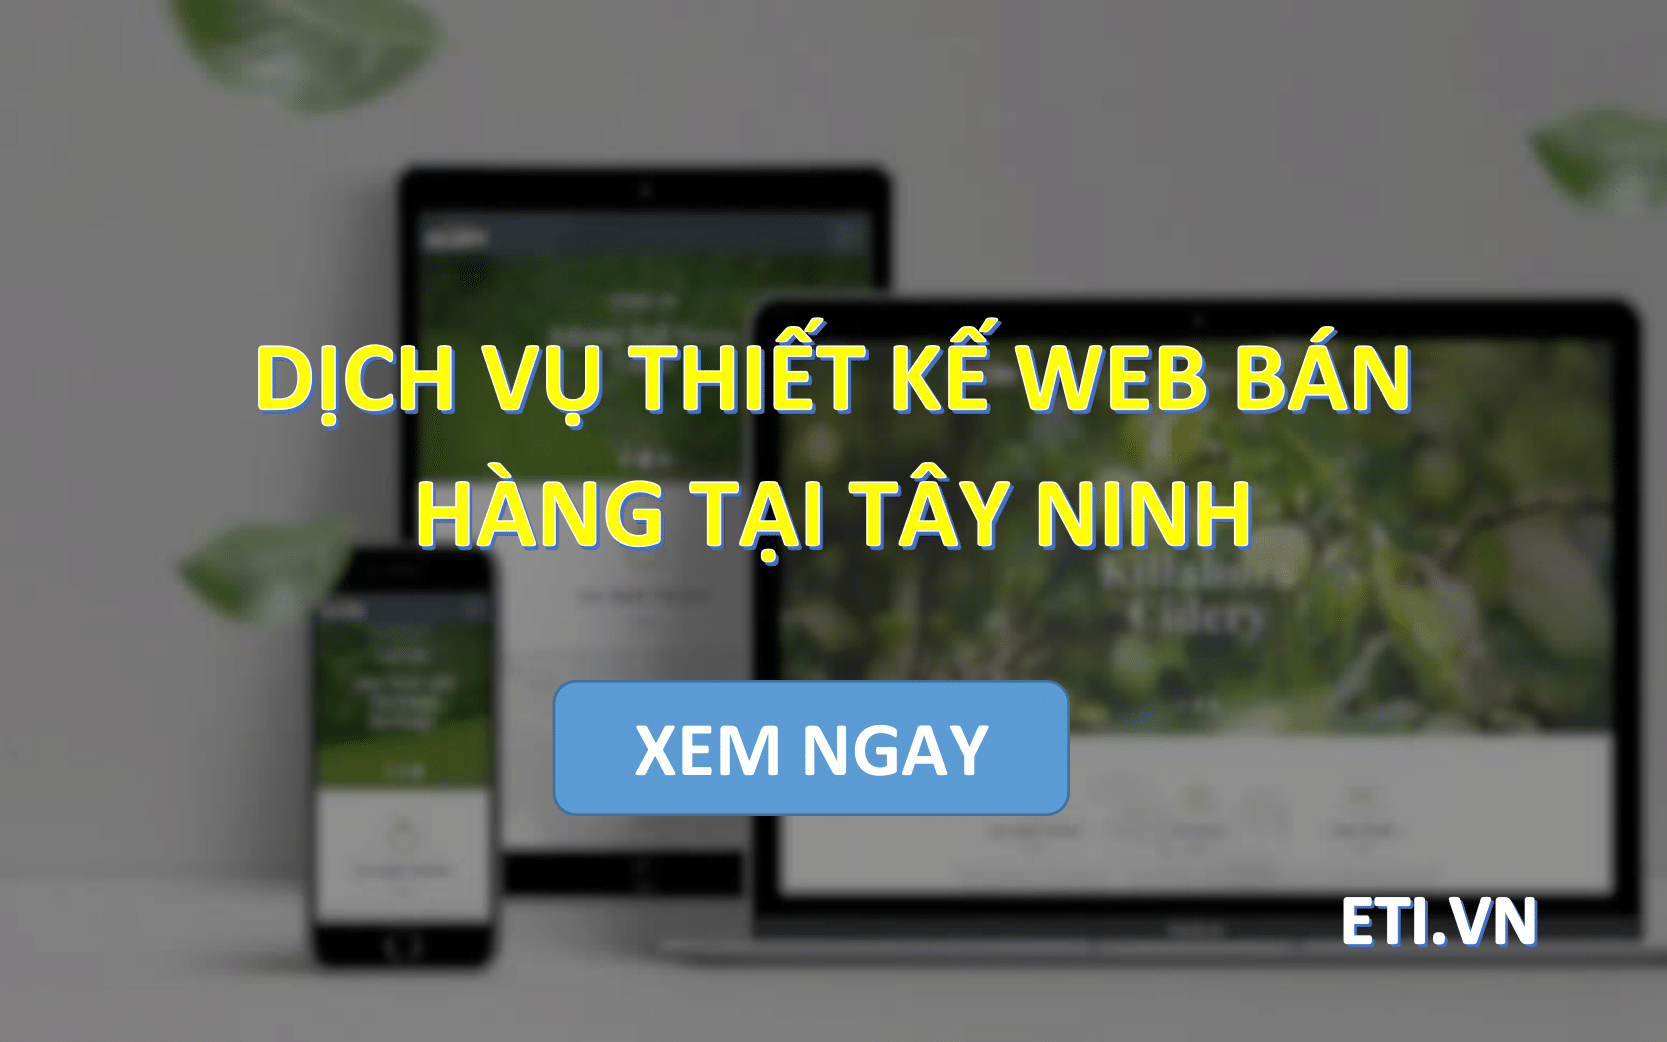 Dịch vụ Thiết kế web bán hàng tại Tây Ninh